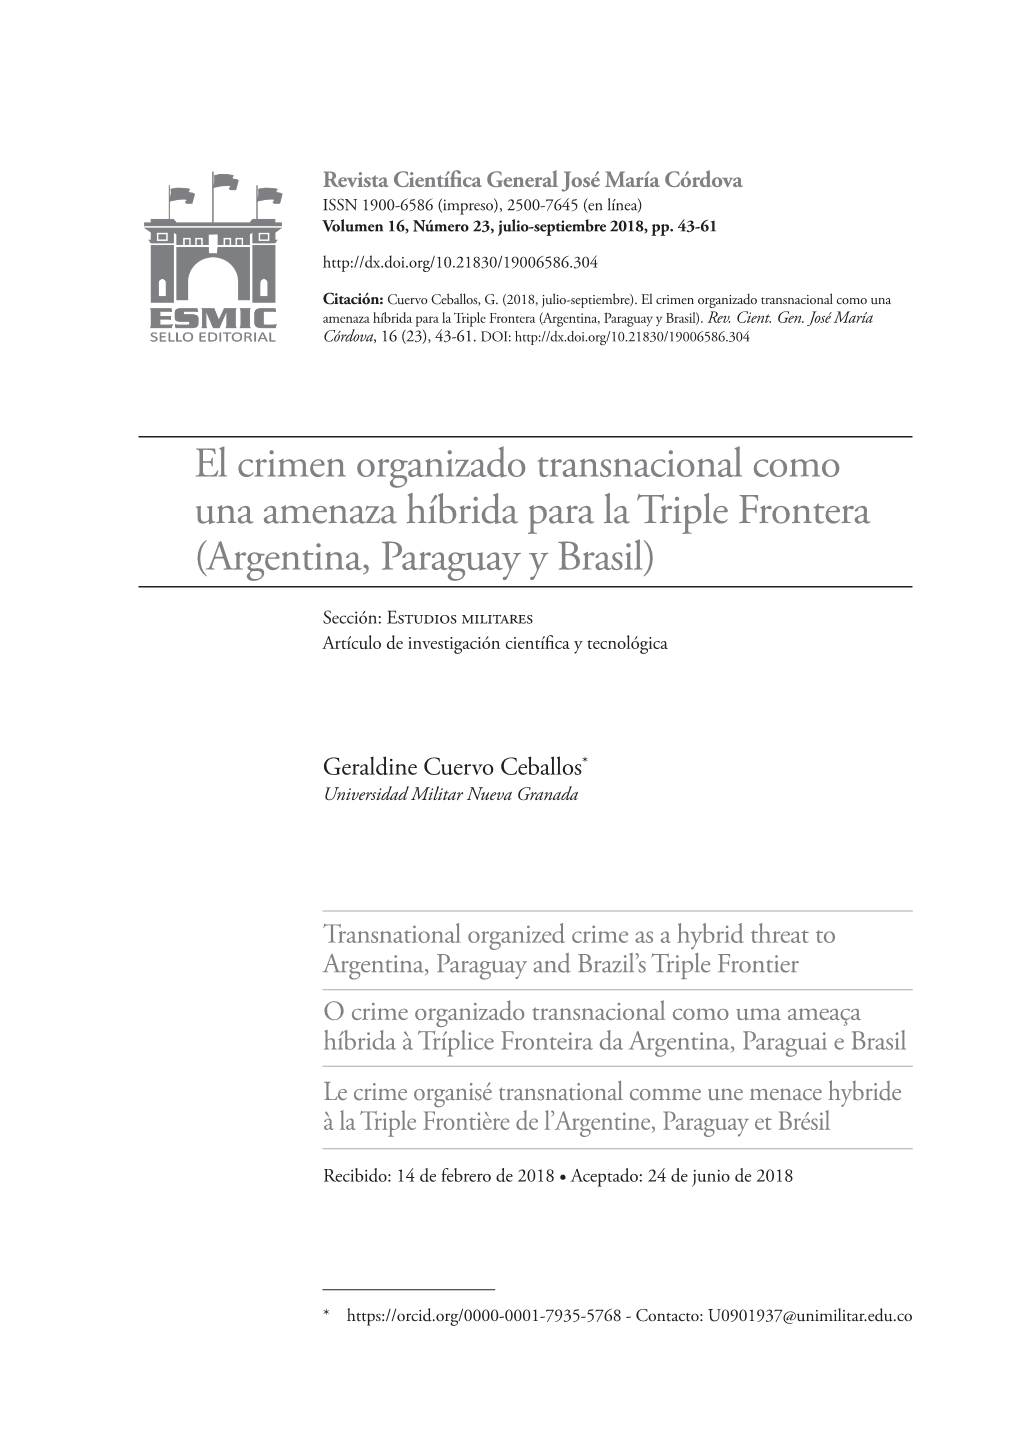 El Crimen Organizado Transnacional Como Una Amenaza Híbrida Para La Triple Frontera (Argentina, Paraguay Y Brasil)